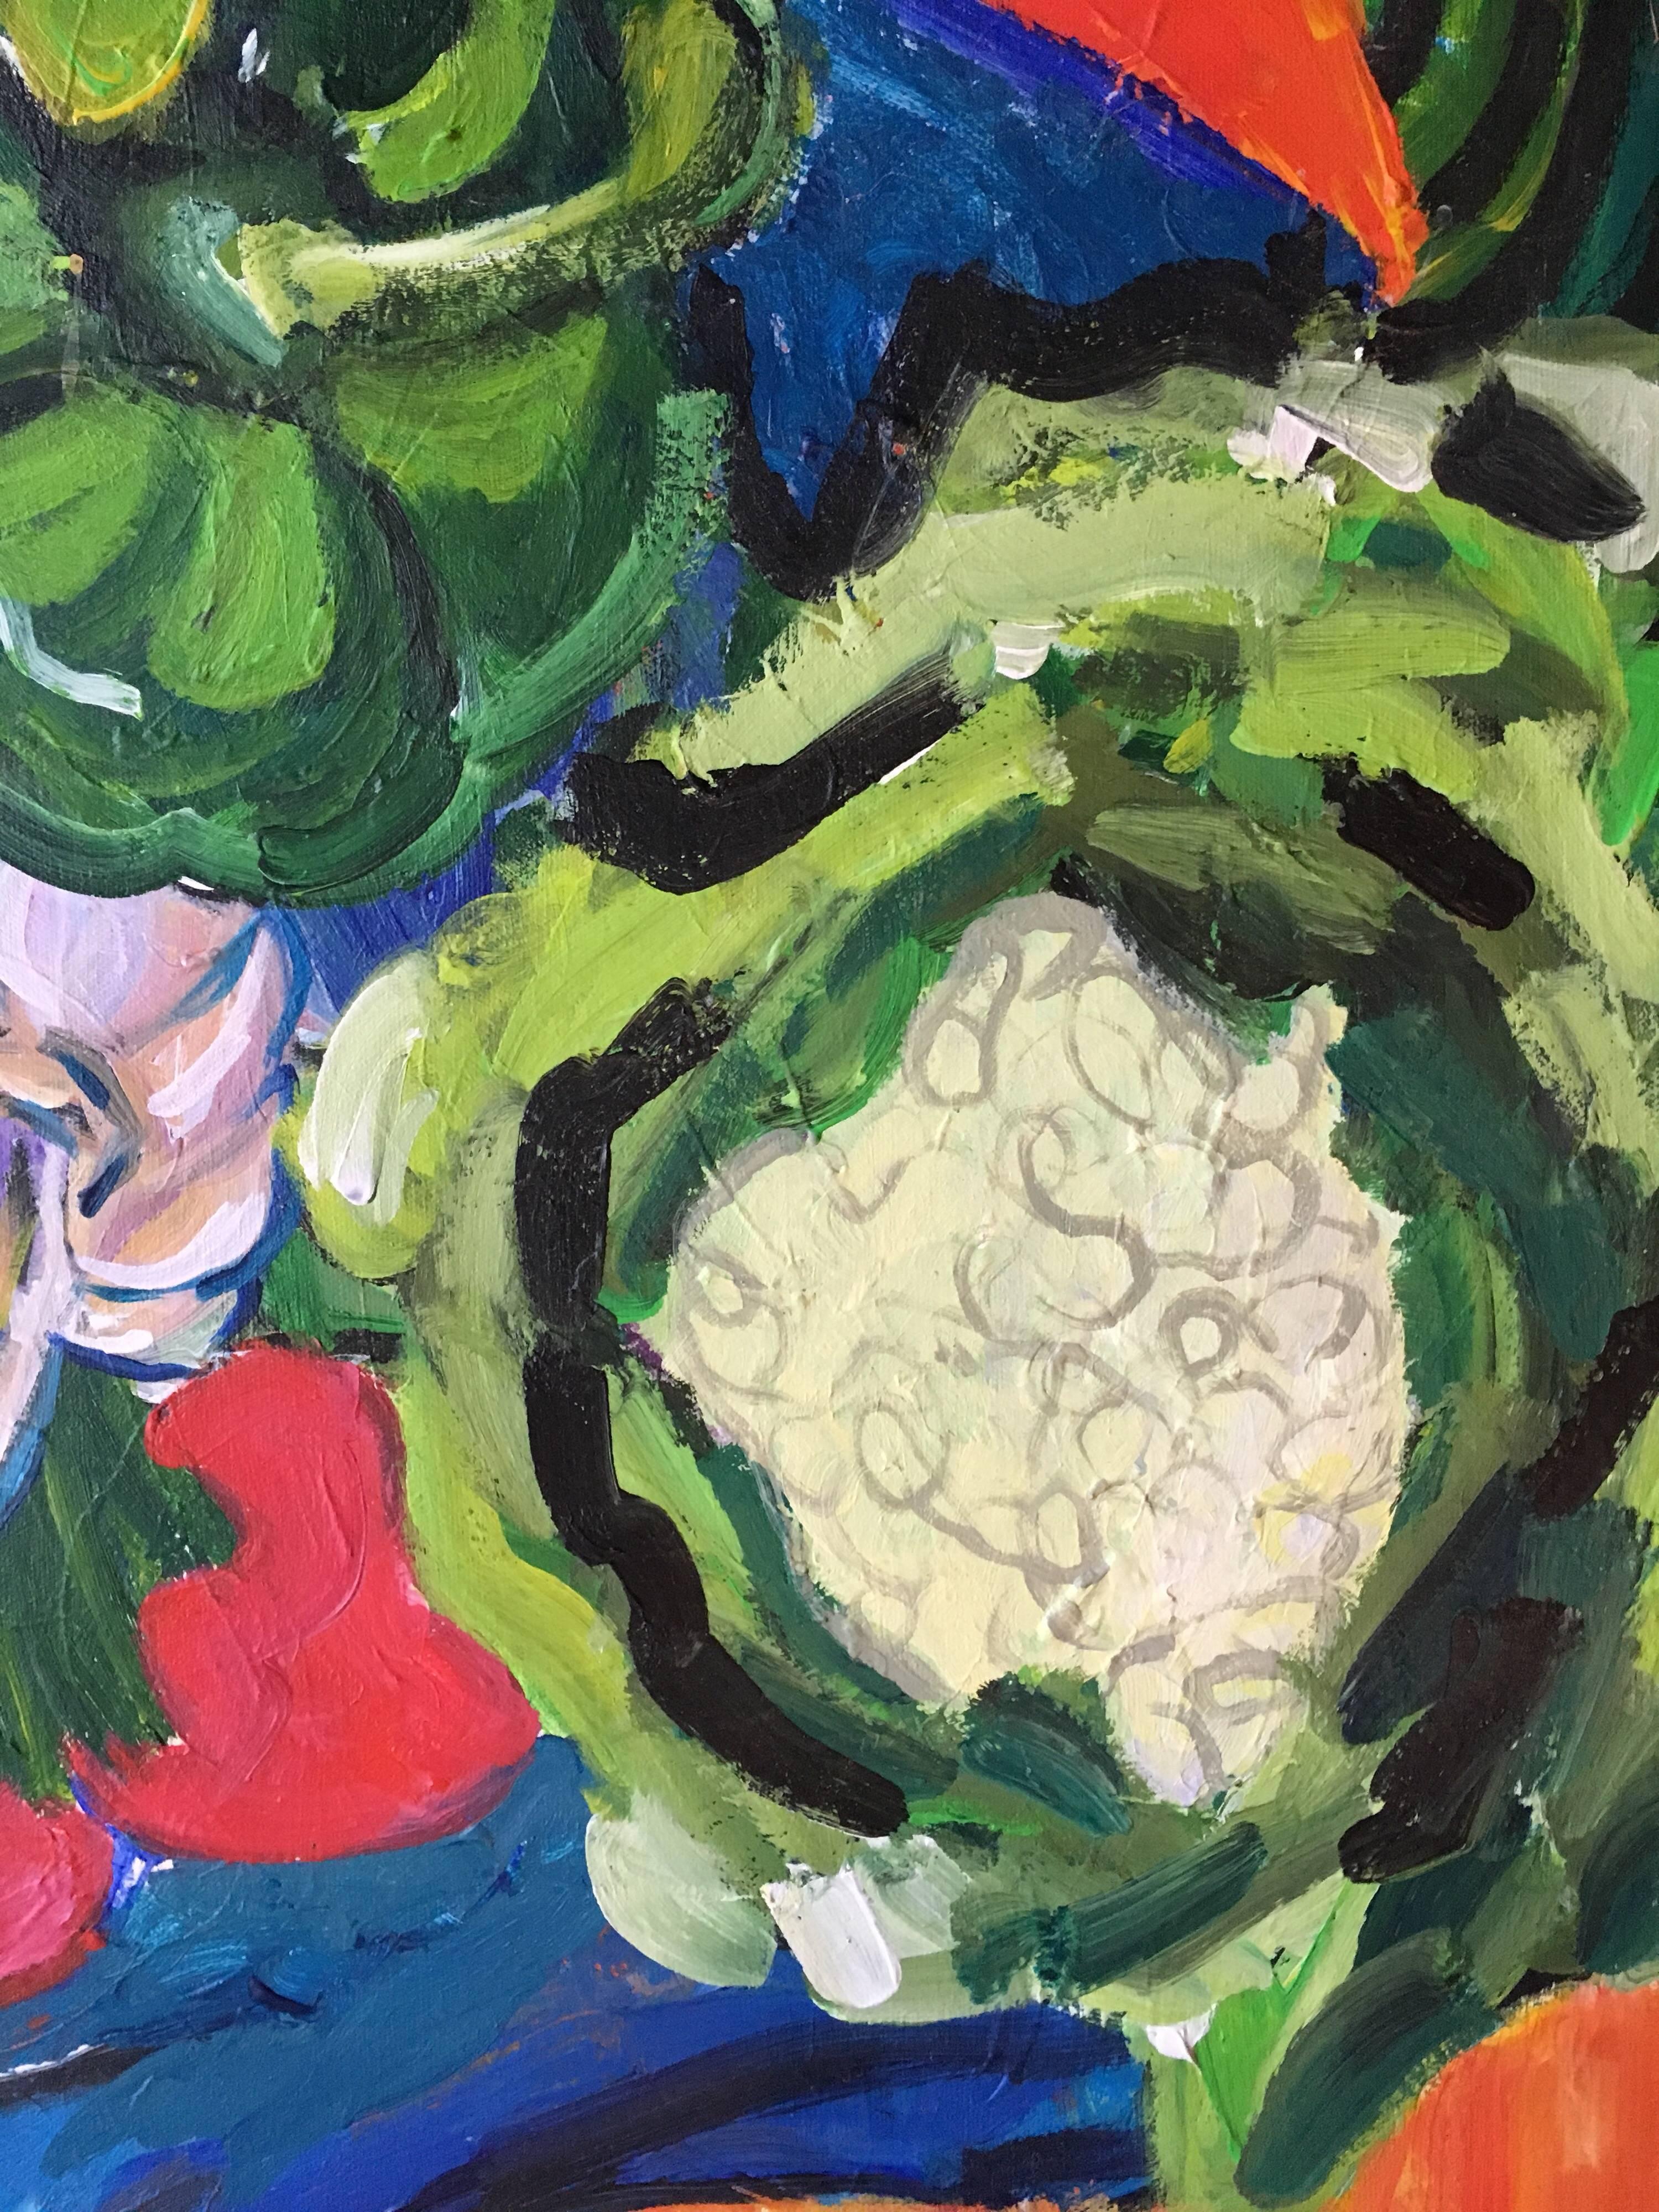 Gartengemüse, Stillleben, helle Farben, britischer Künstler
von Pamela Cawley, Britin, 20. Jahrhundert
ölgemälde auf Leinwand, ungerahmt

leinwand: 24 x 24 Zoll 

Beeindruckendes originales impressionistisches Ölgemälde der britischen Künstlerin